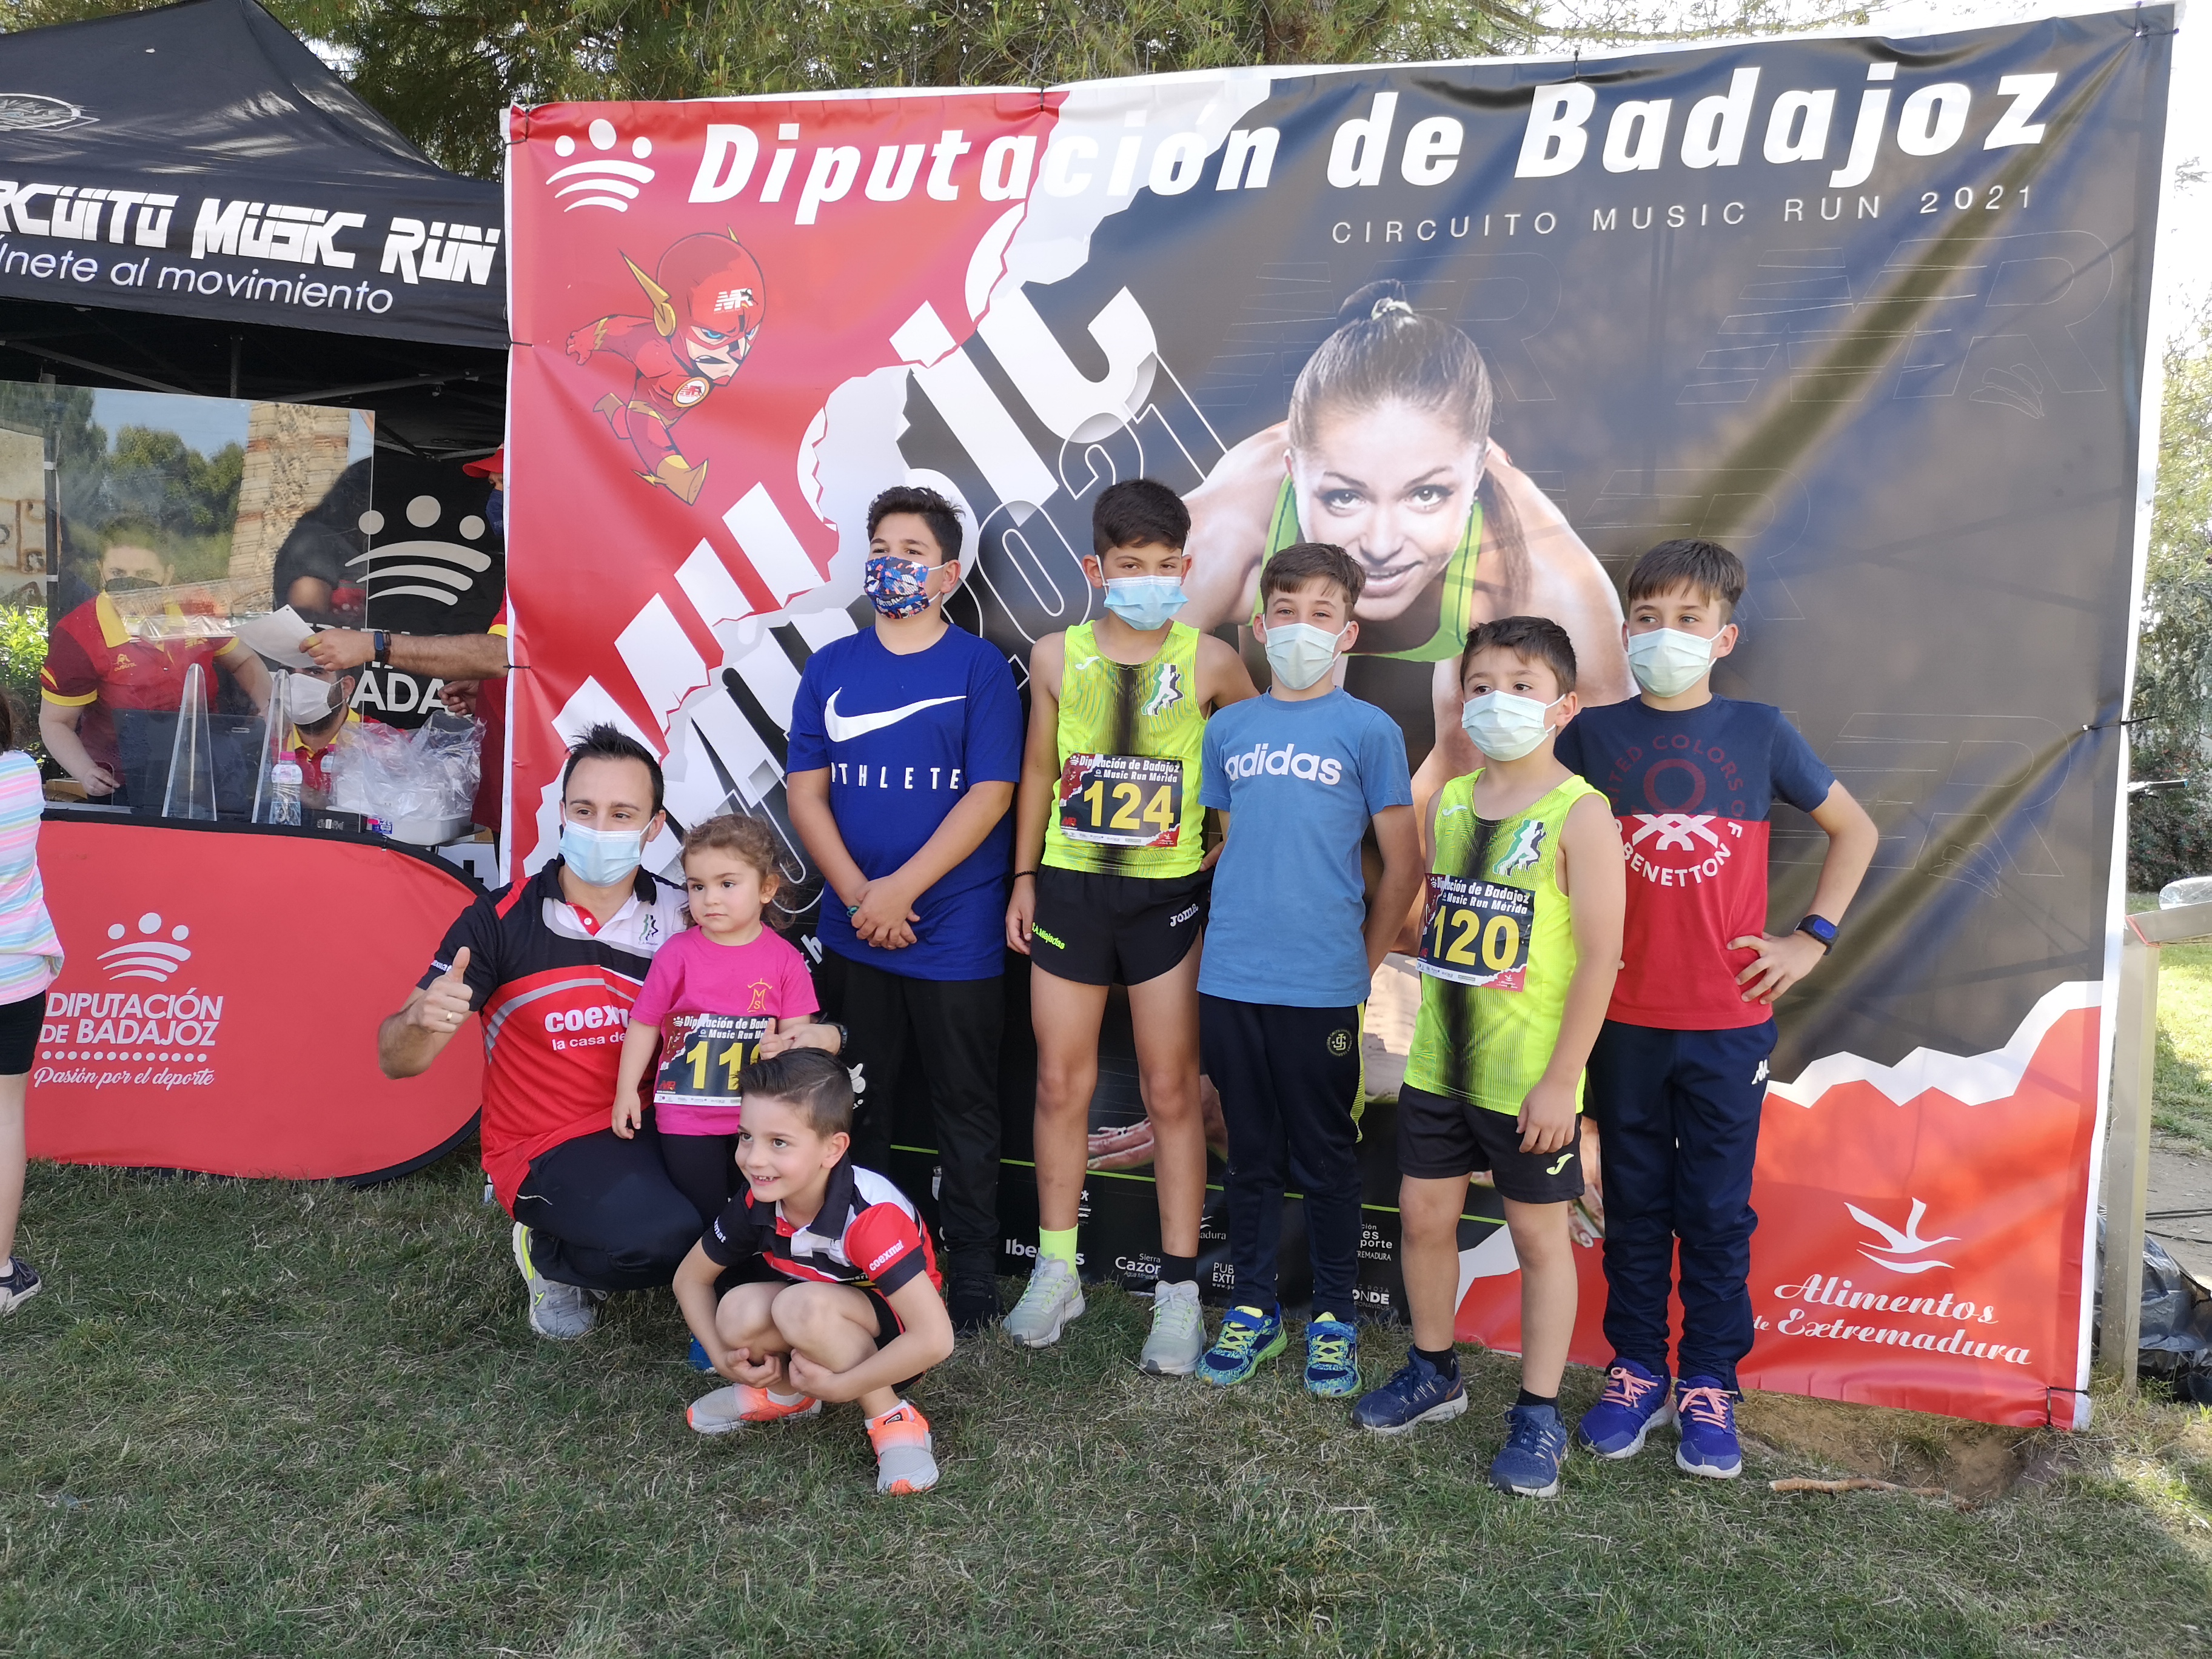 Mérida inauguró el circuito de pruebas Music Run de la Diputación de Badajoz